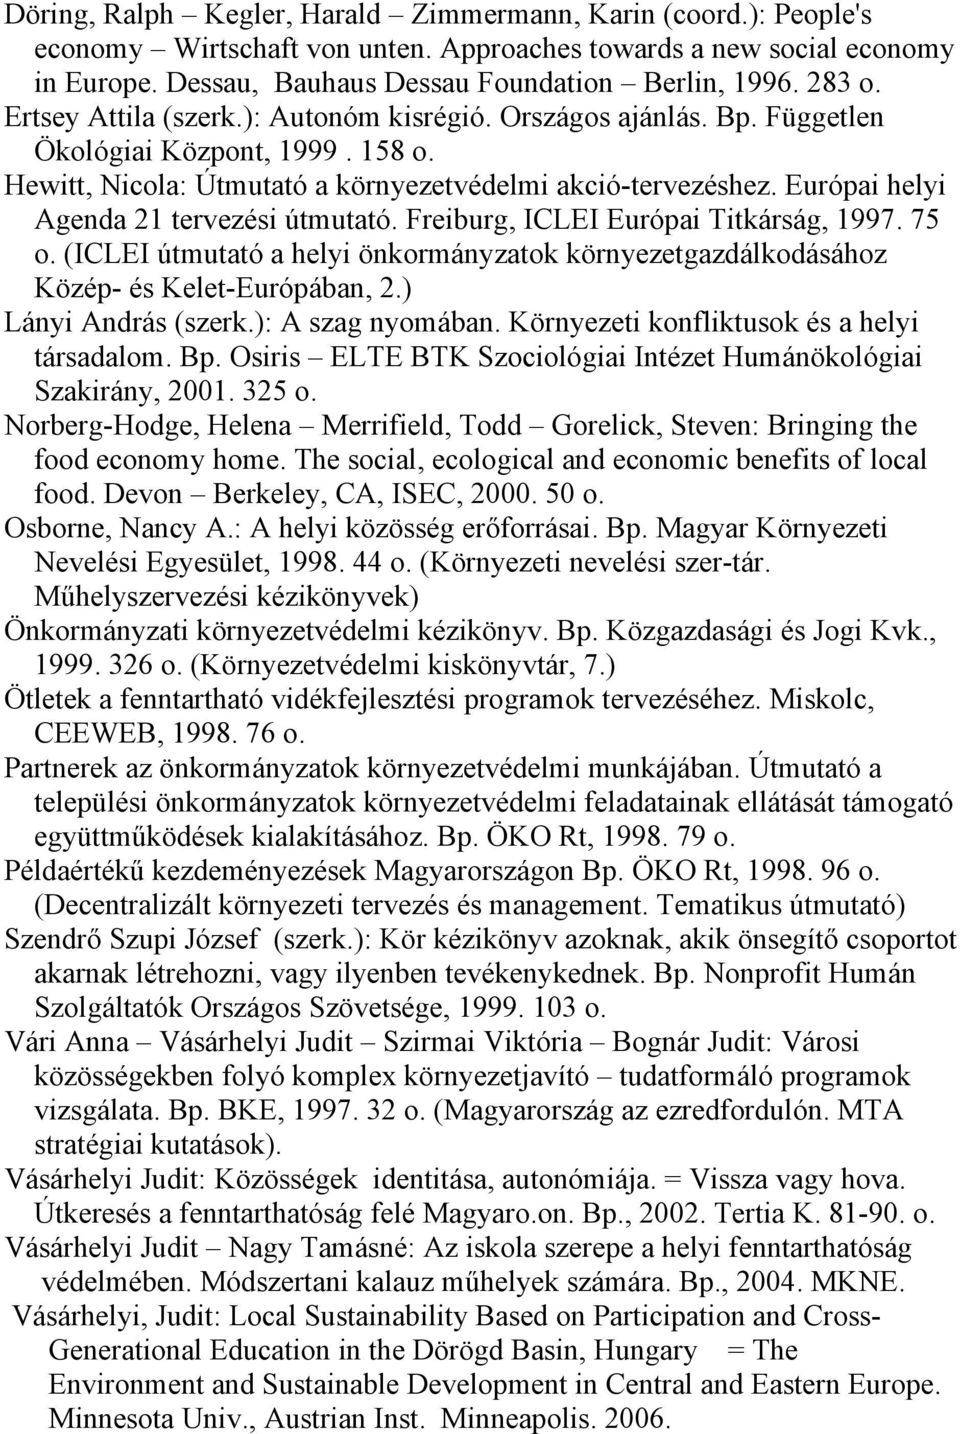 Európai helyi Agenda 21 tervezési útmutató. Freiburg, ICLEI Európai Titkárság, 1997. 75 o. (ICLEI útmutató a helyi önkormányzatok környezetgazdálkodásához Közép- és Kelet-Európában, 2.